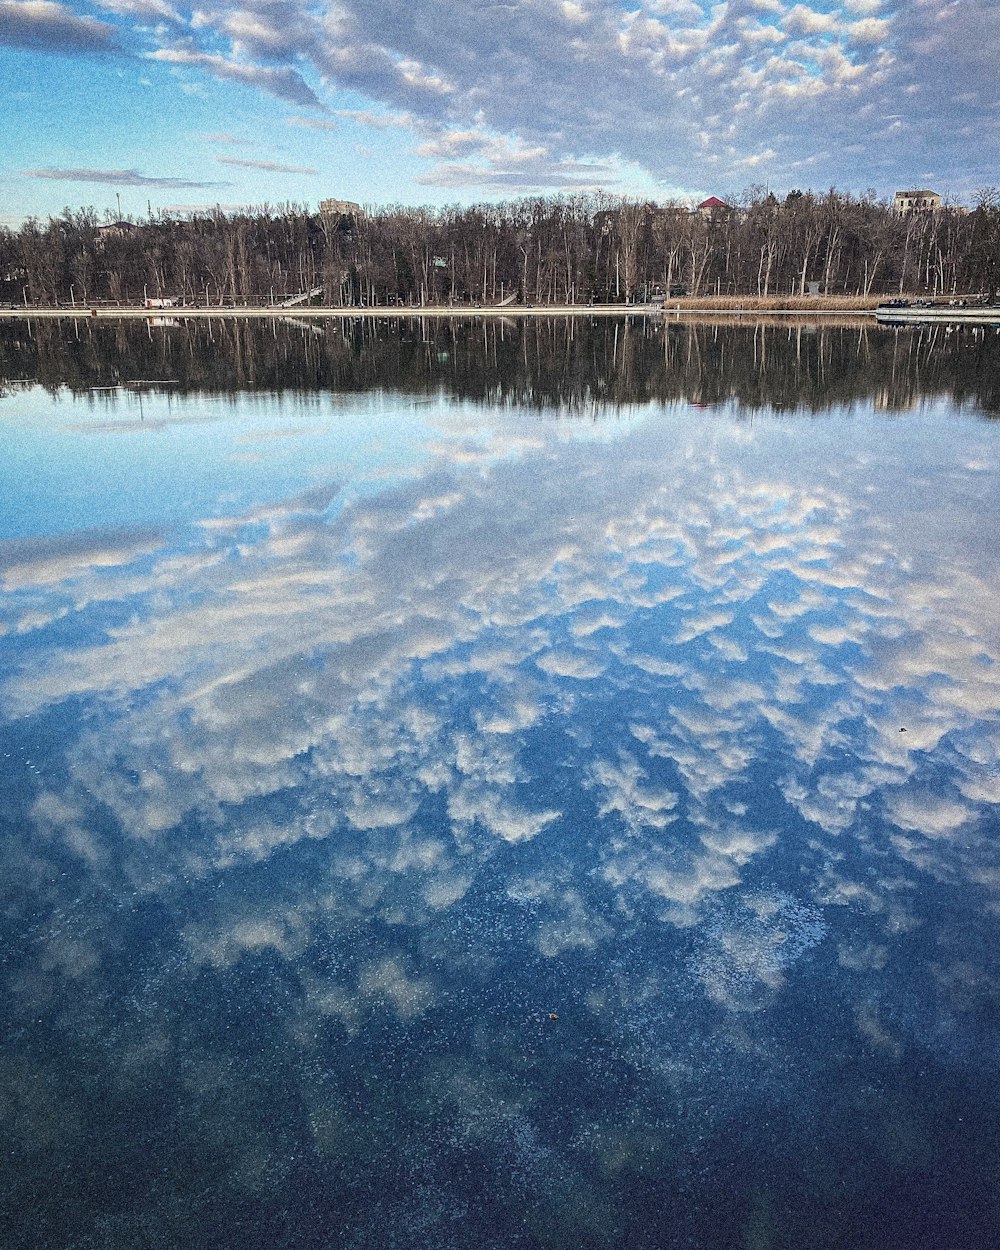 un grande specchio d'acqua circondato da alberi